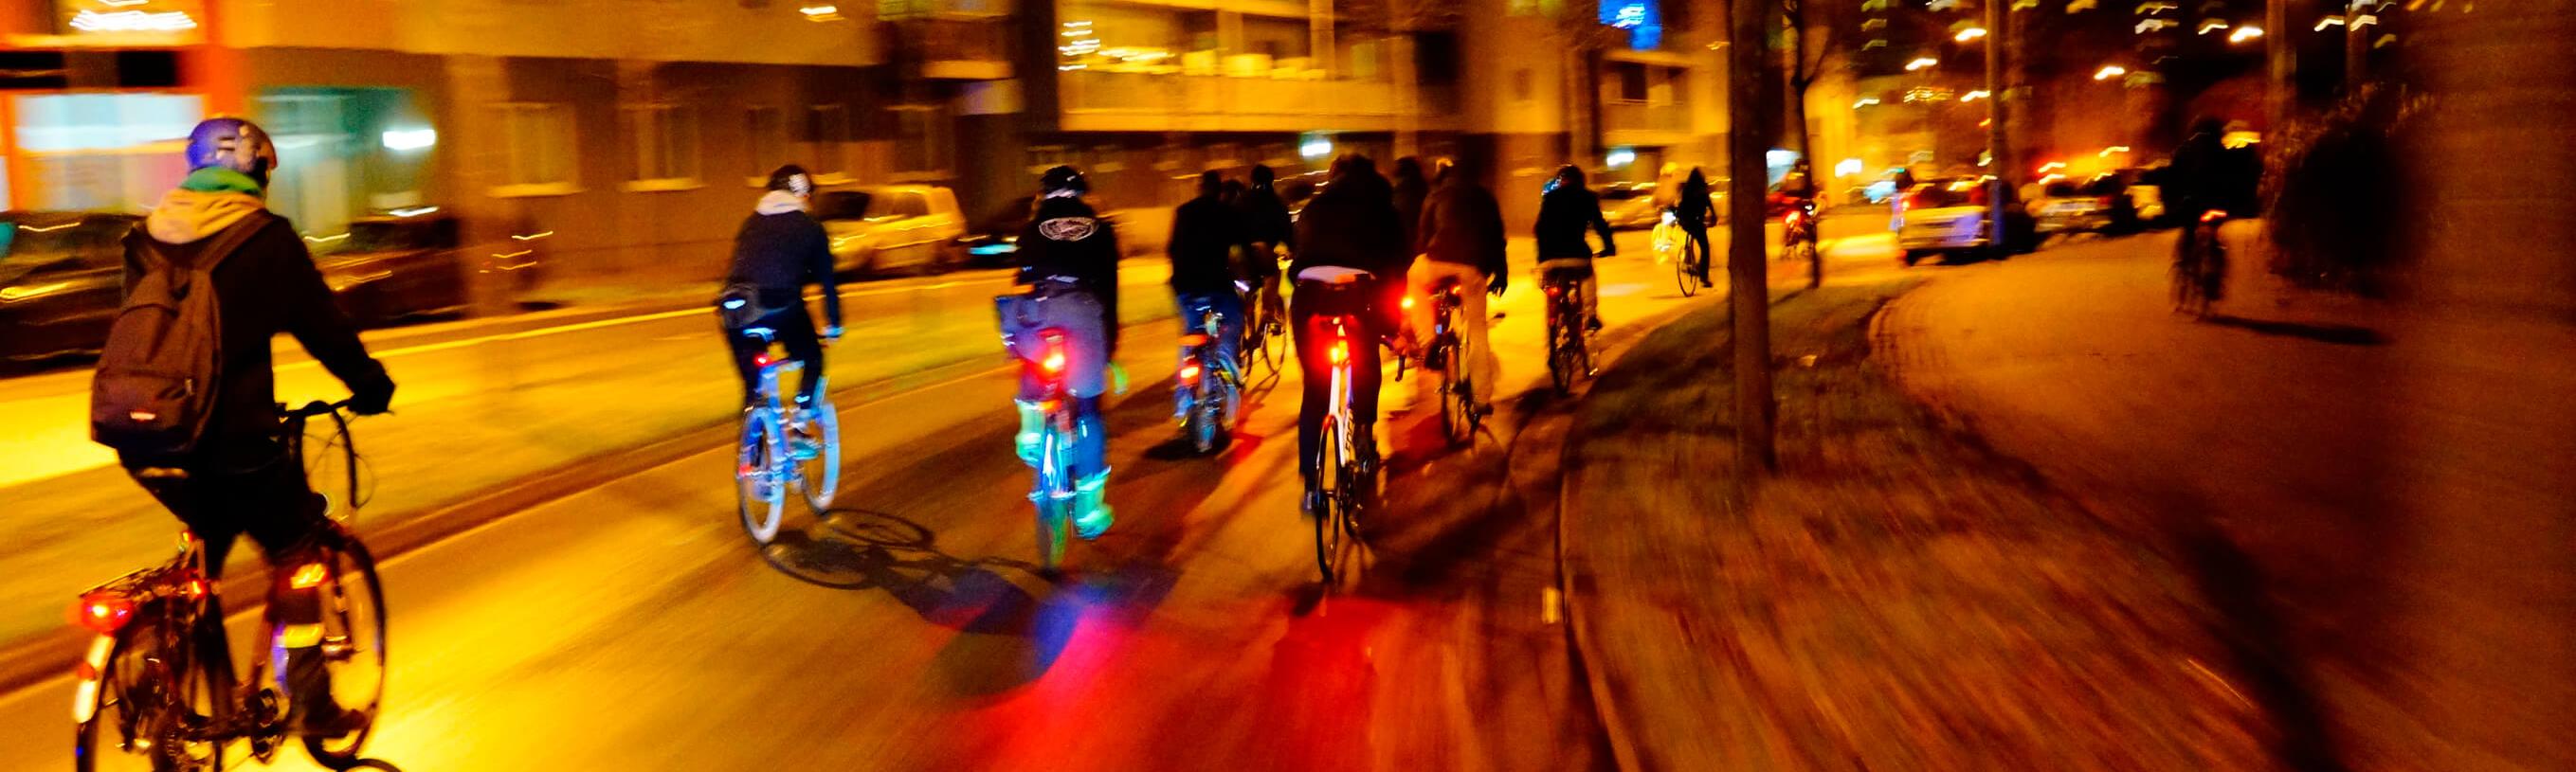 Faire du vélo la nuit : dangers et sécurité